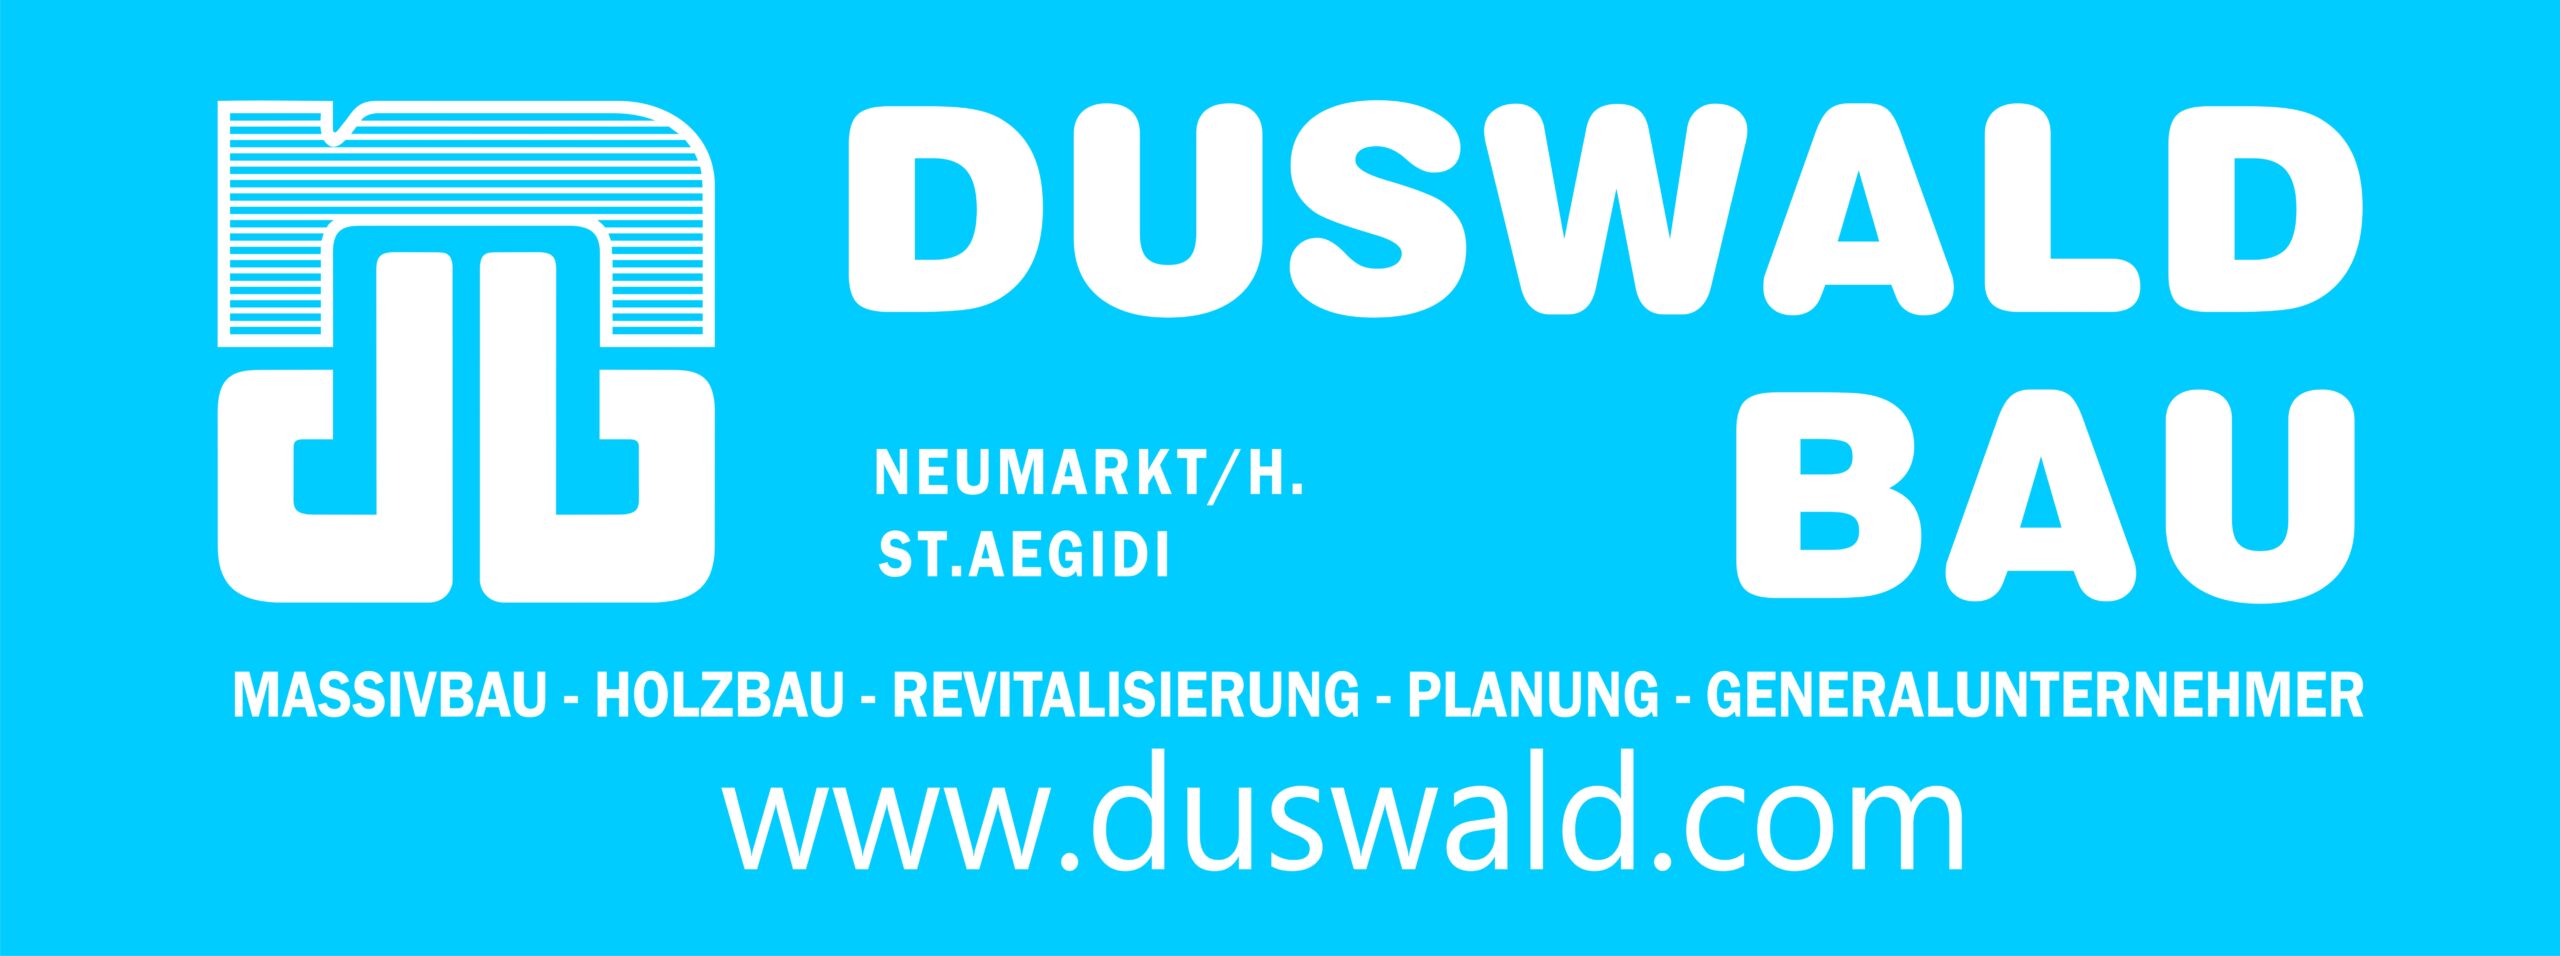 DUSWALD-BAU Logo